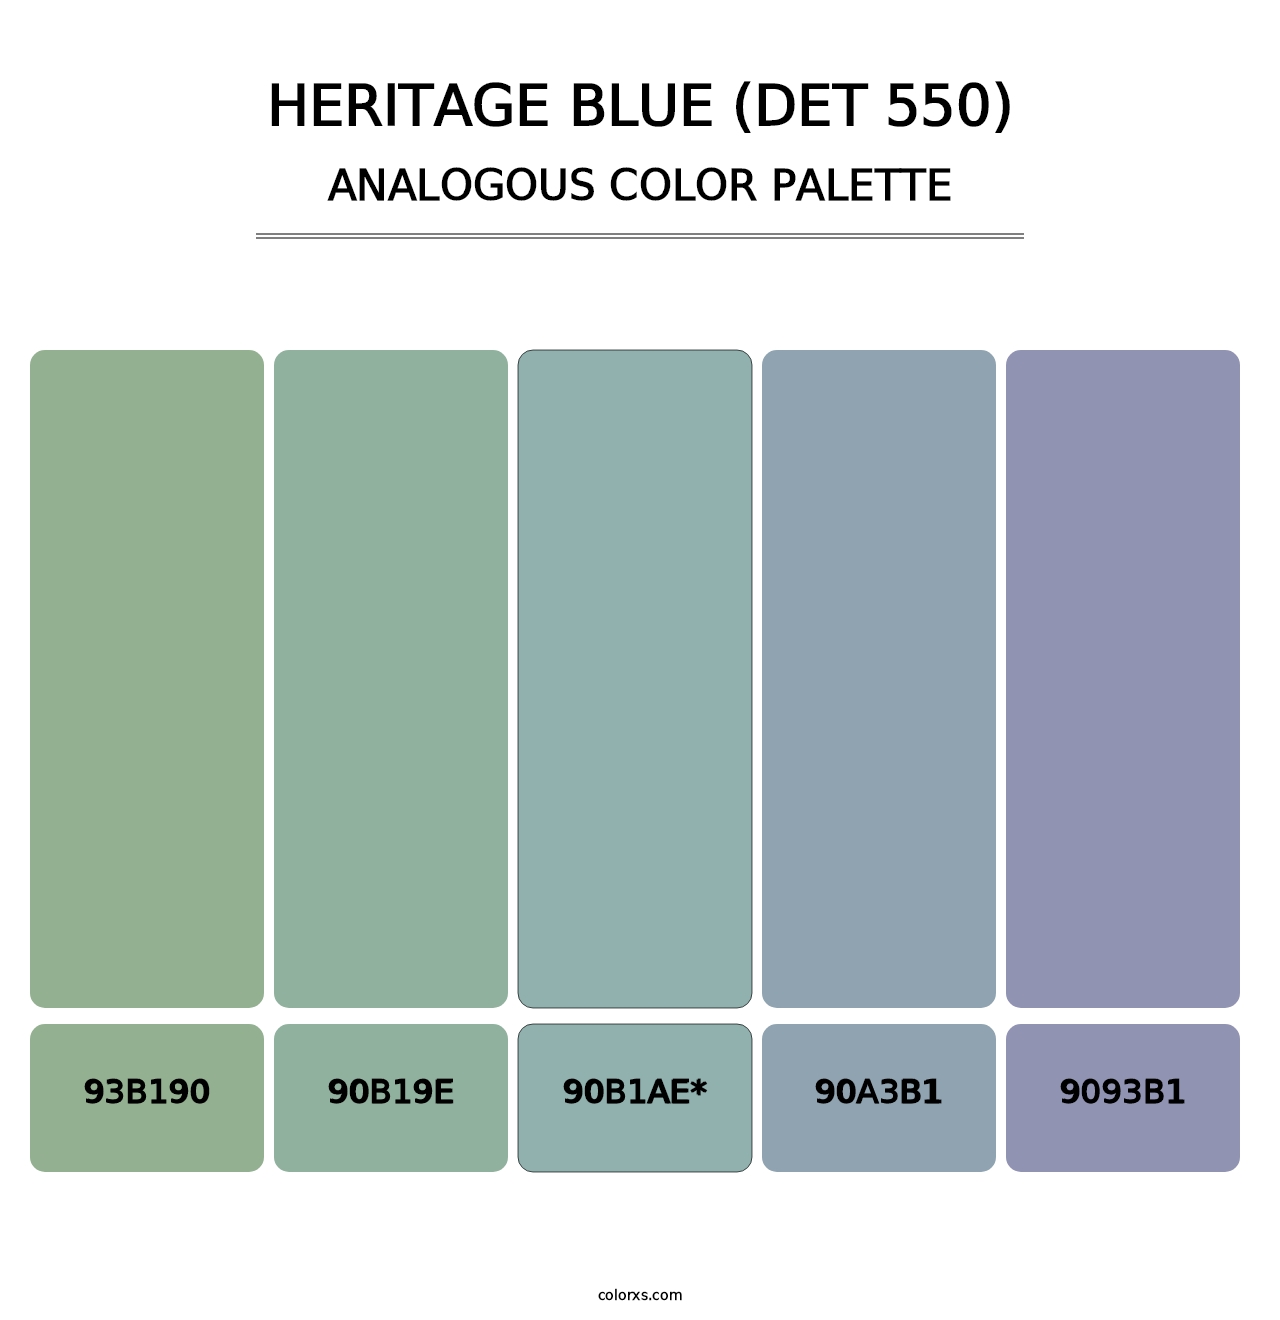 Heritage Blue (DET 550) - Analogous Color Palette